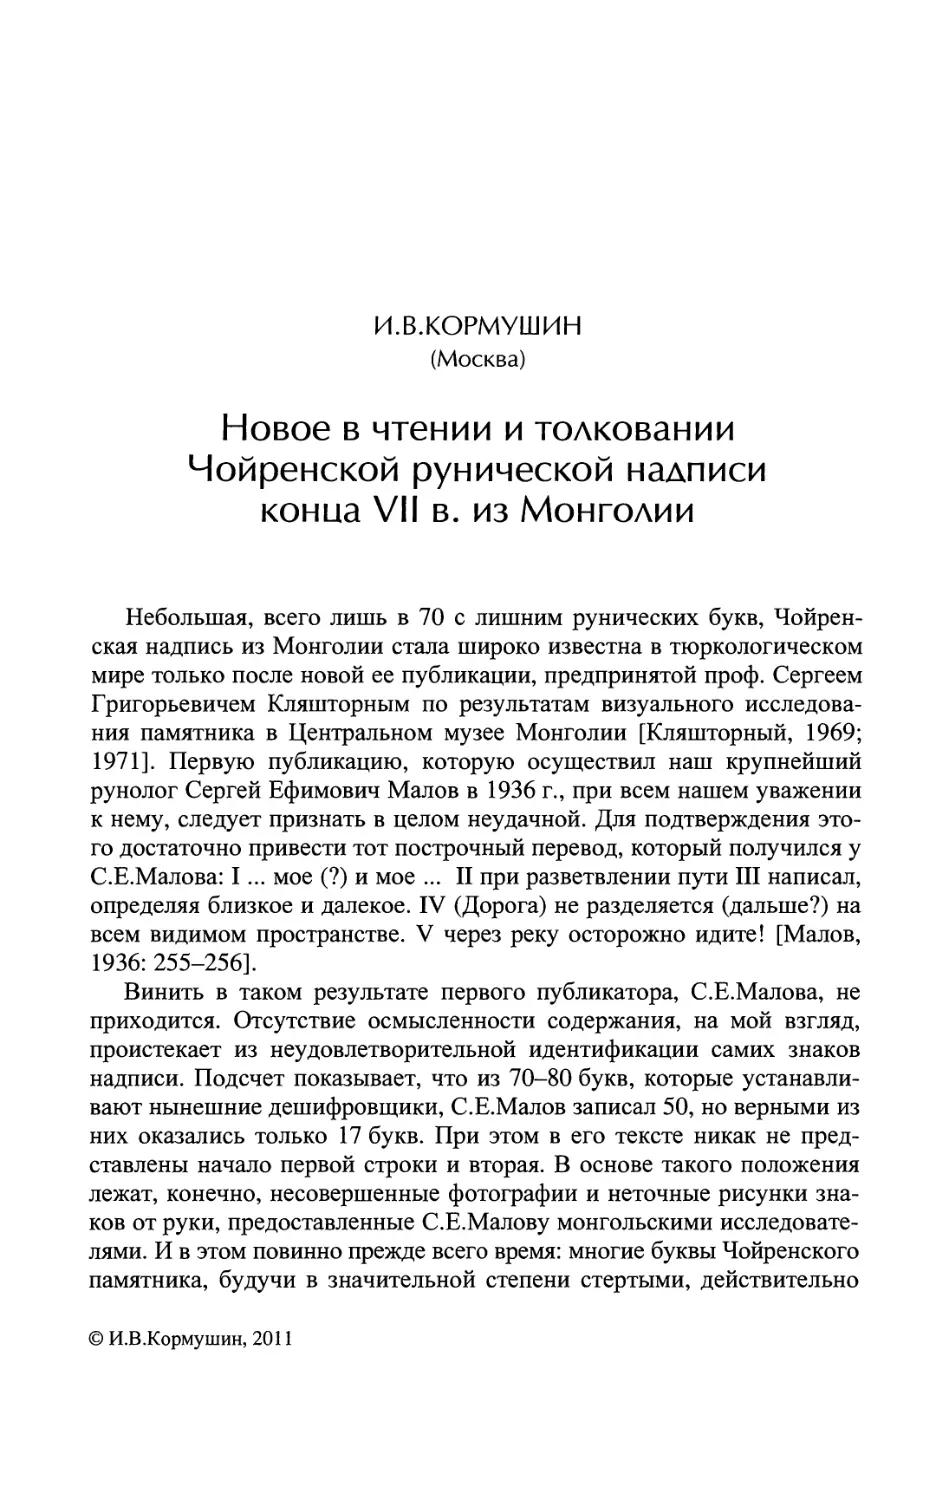 Новое в чтении и толковании Чойренской рунической надписи конца VII в. из Монголии